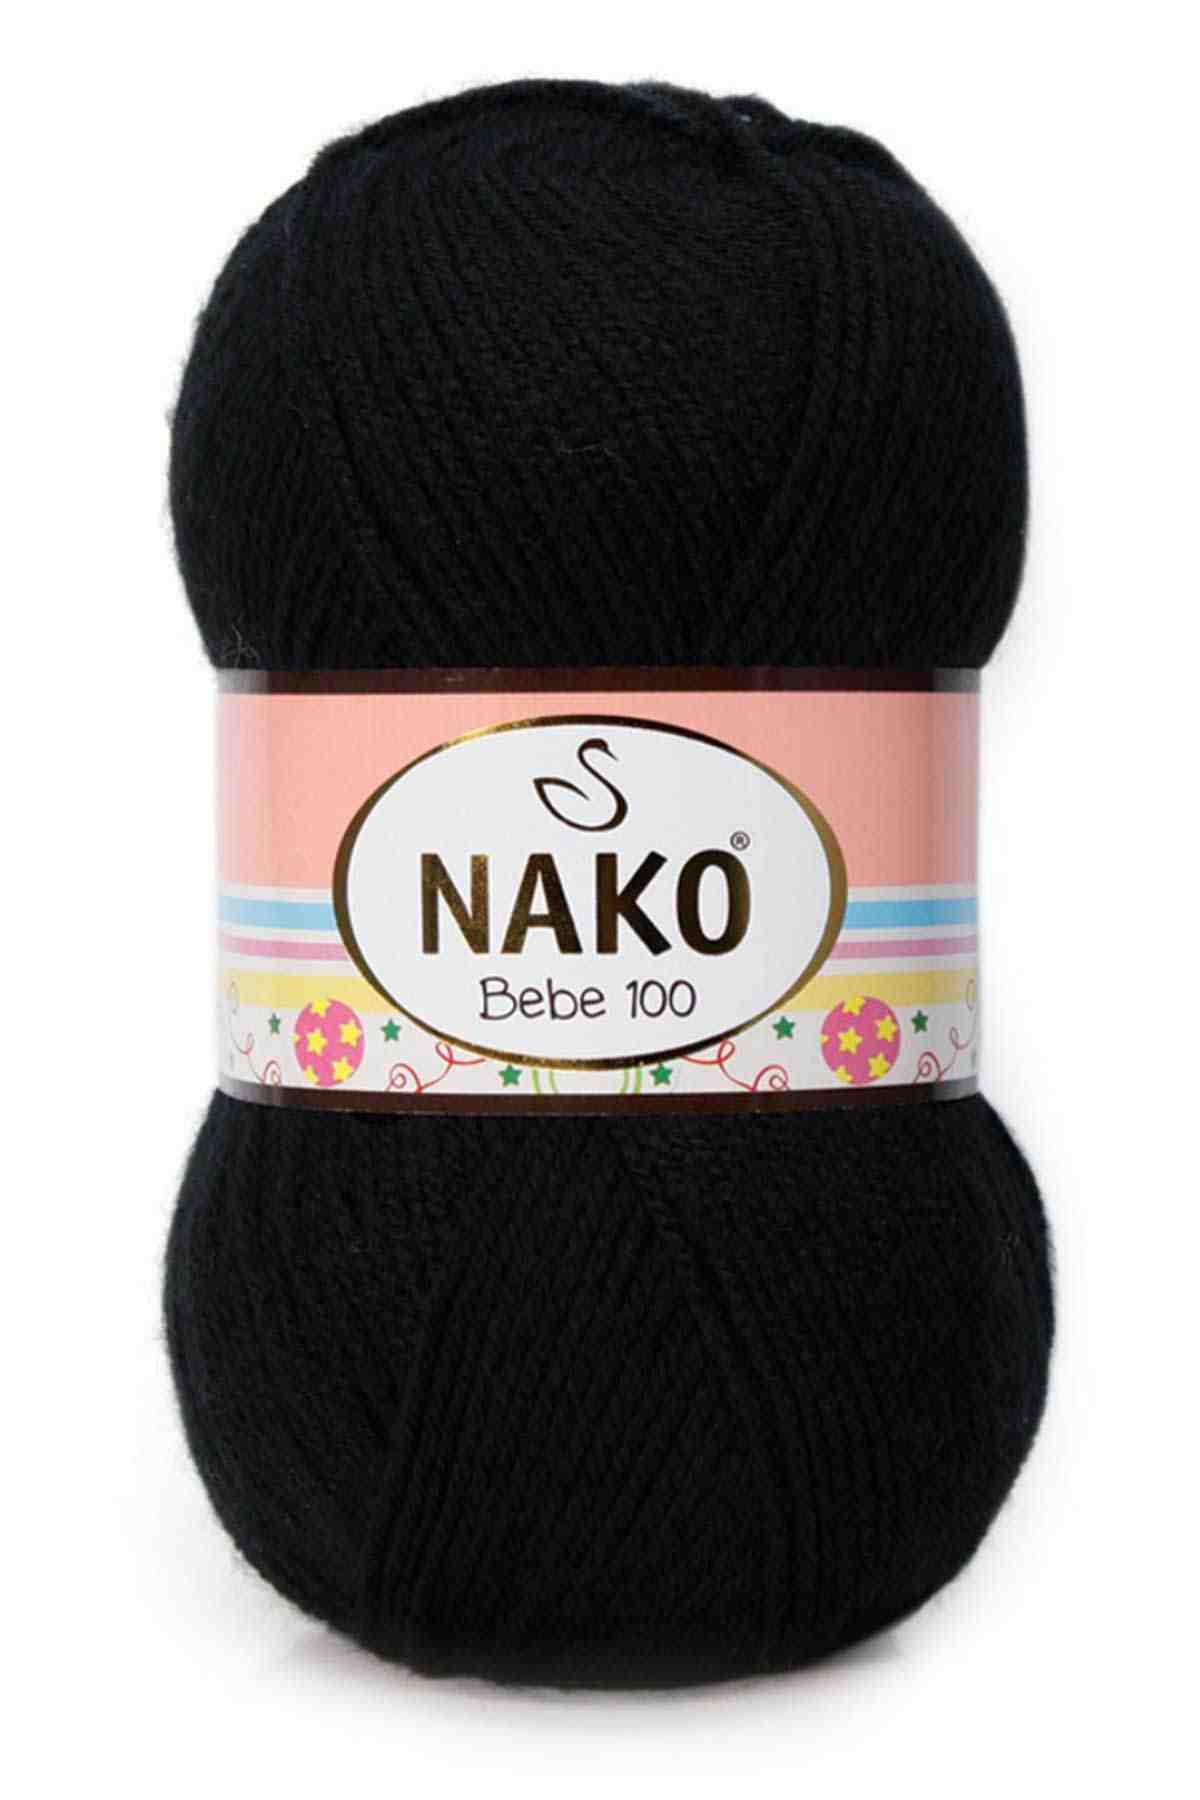 Nako Bebe 100 Acrylic Yarn